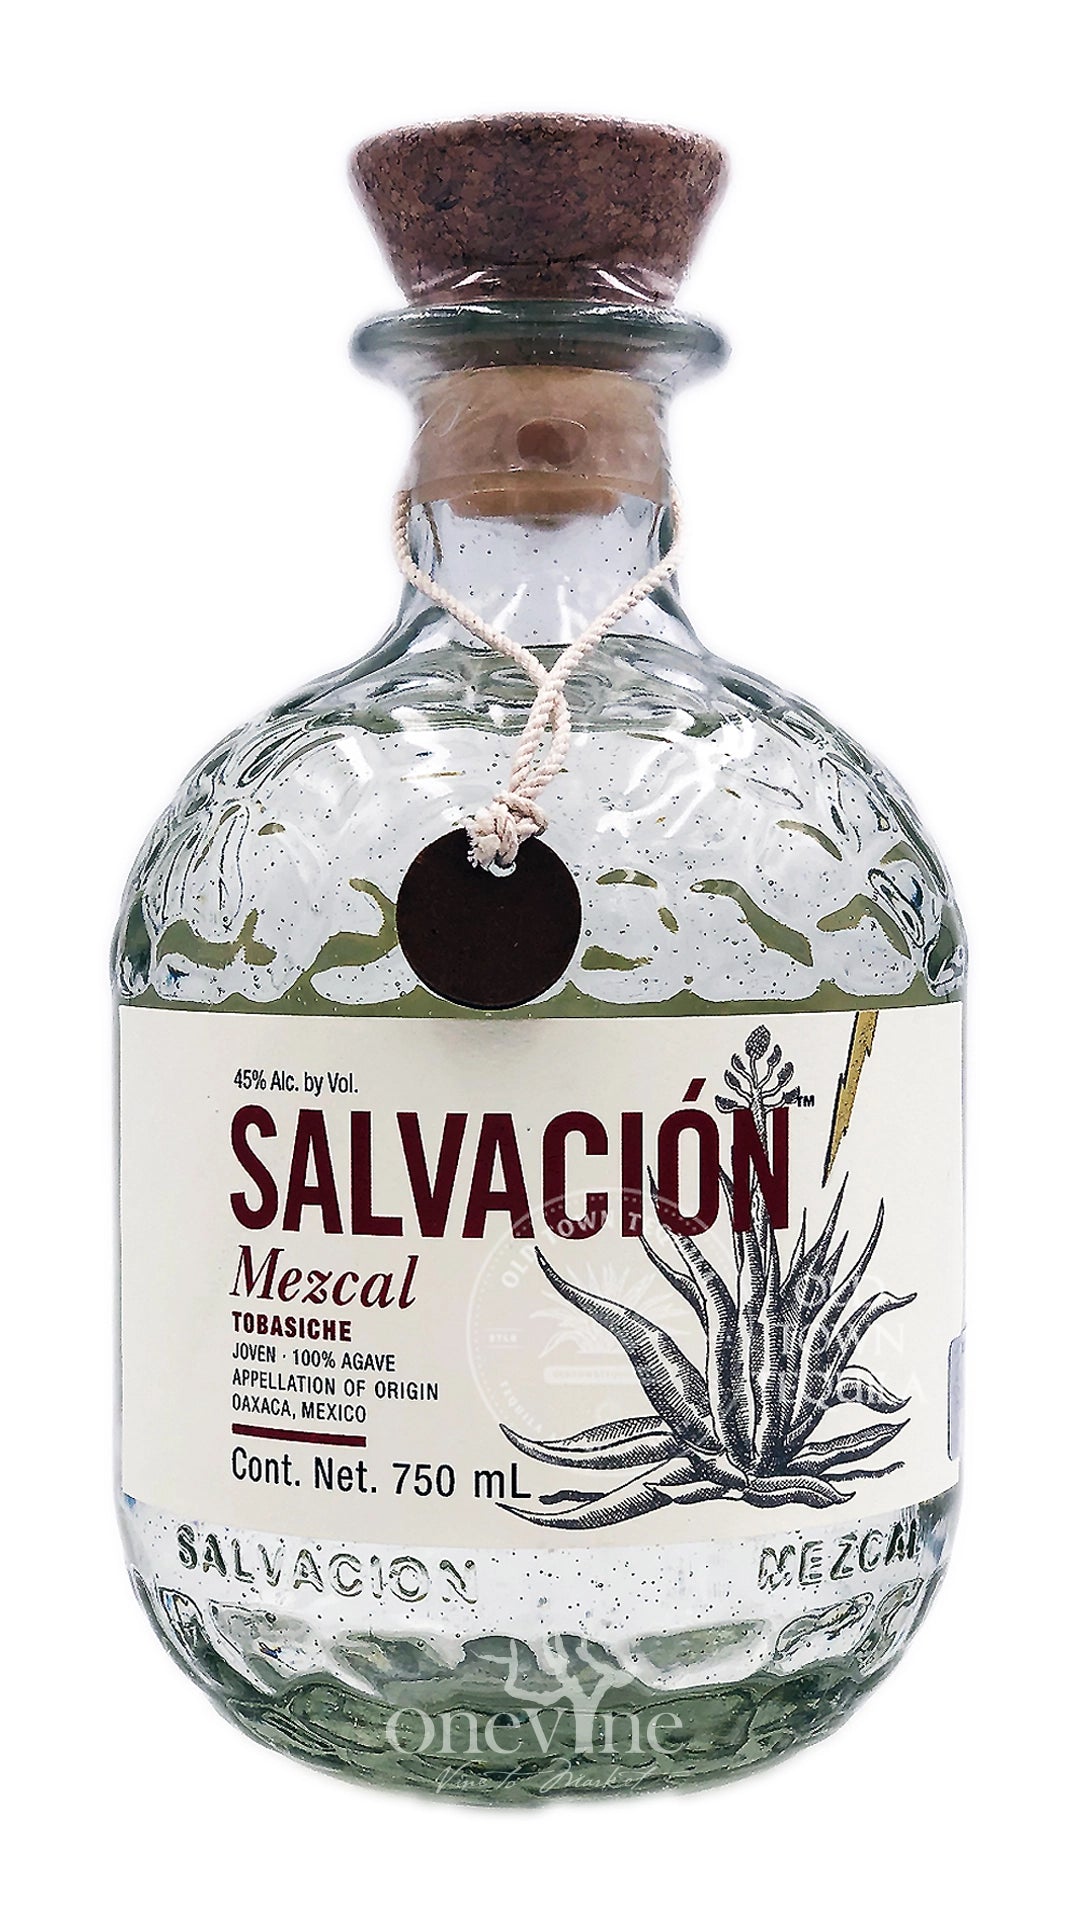 Salvacion Mezcal Tobasiche Mexico